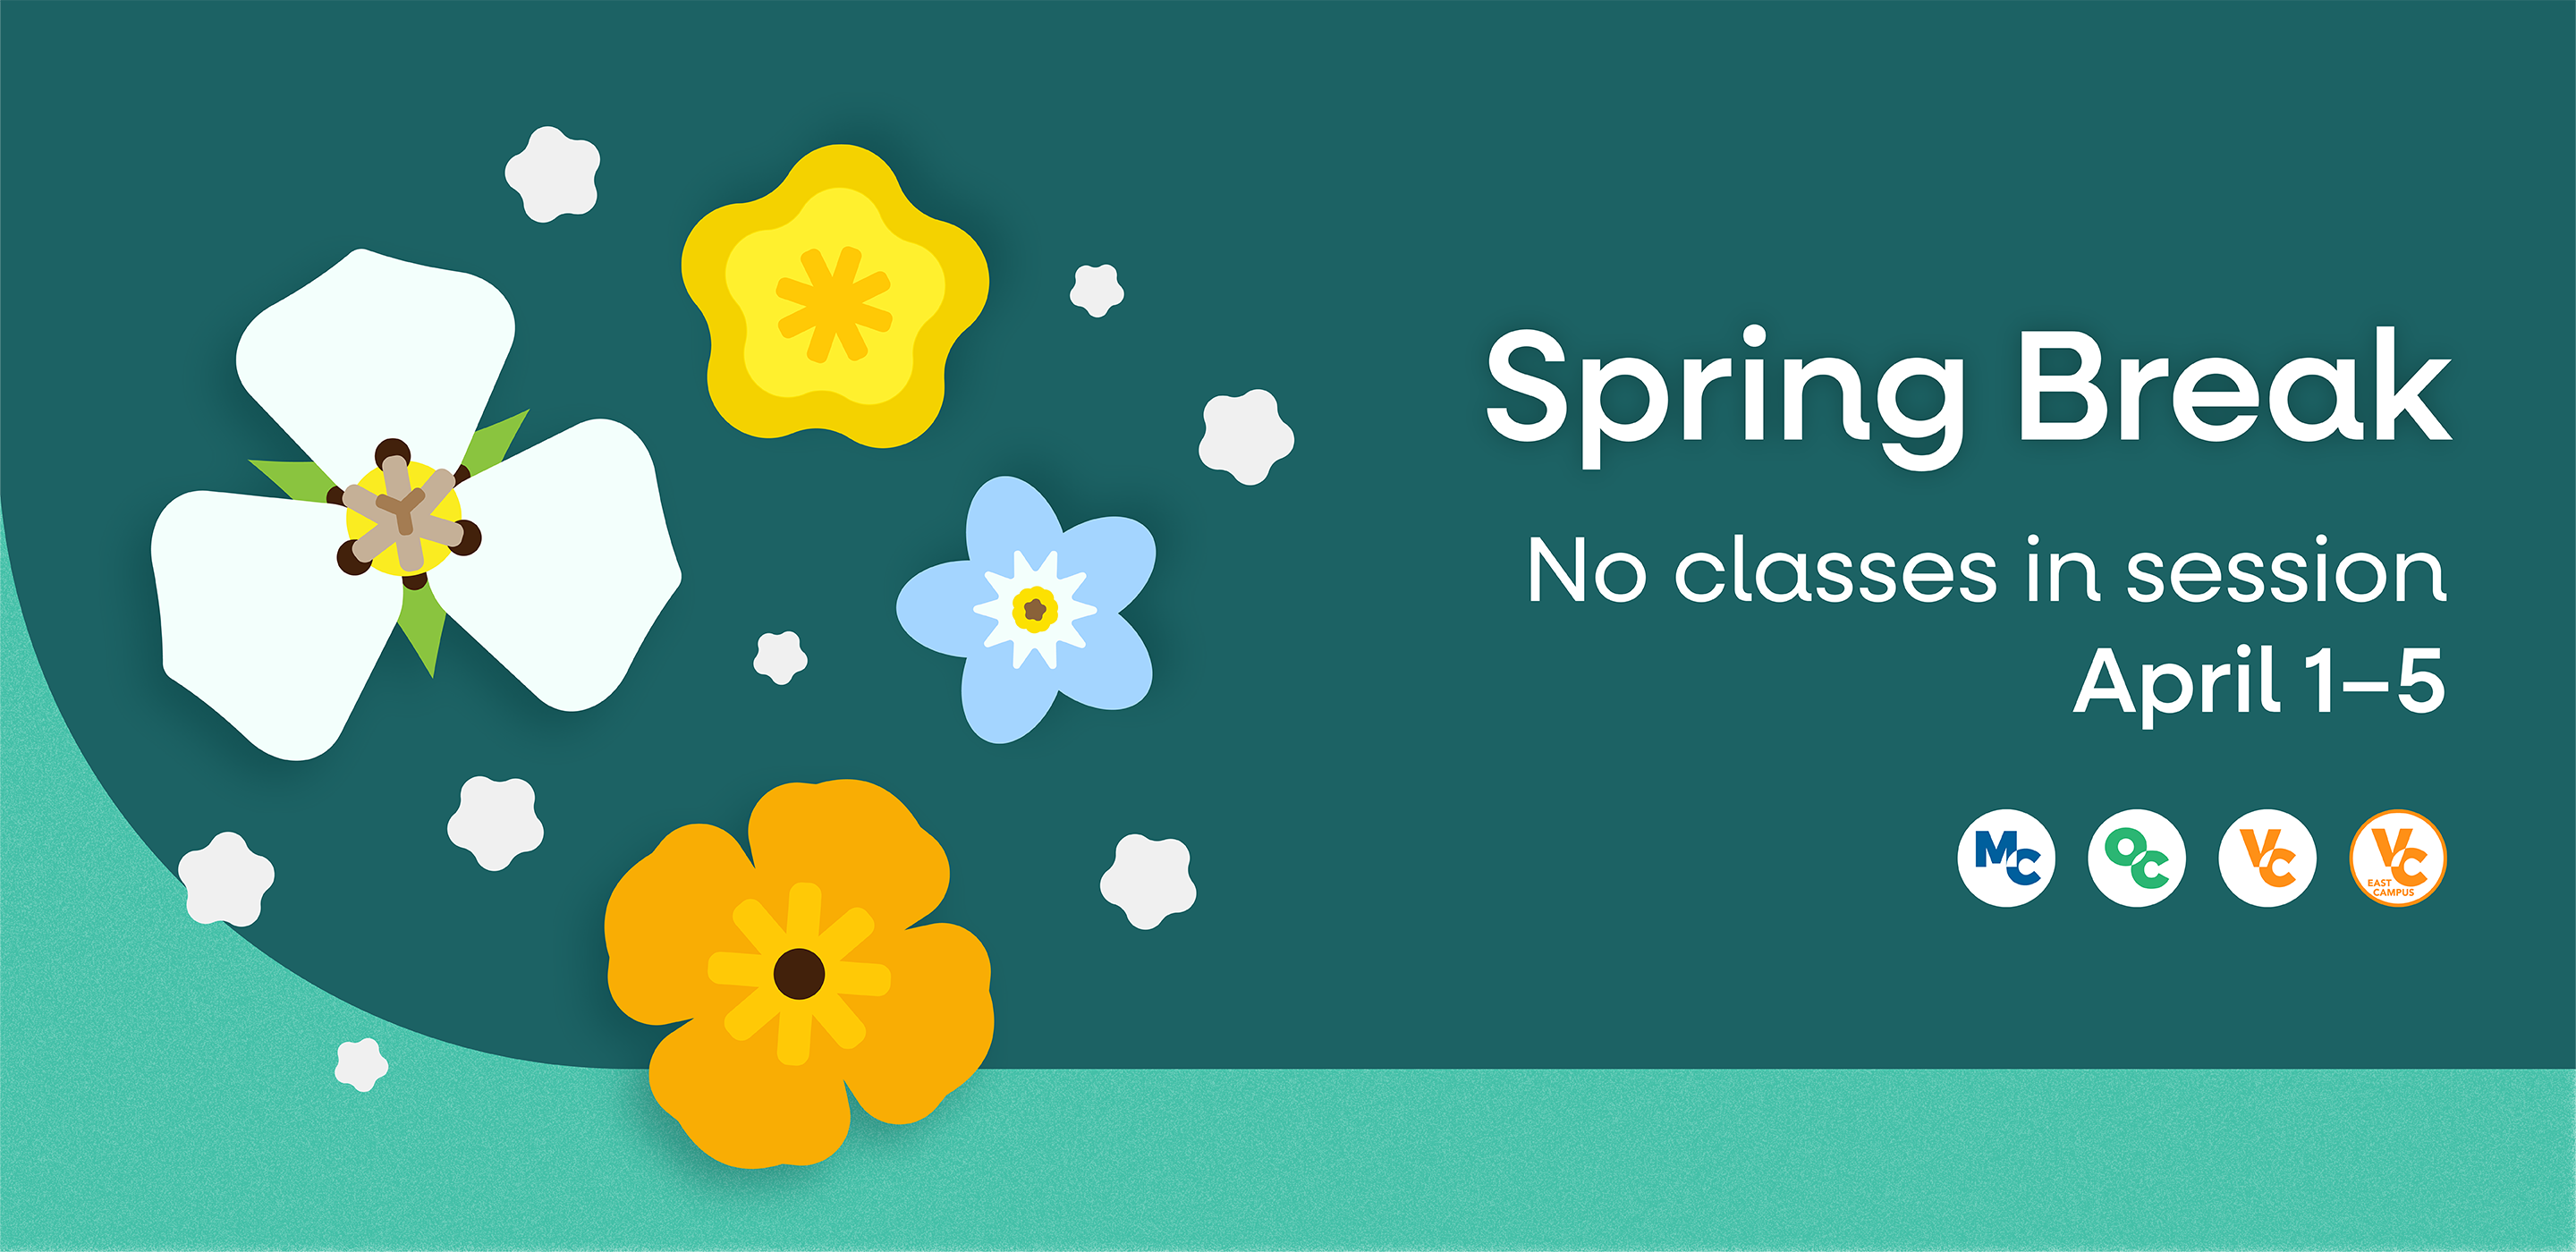 Spring Break. No classes in session April 1-5